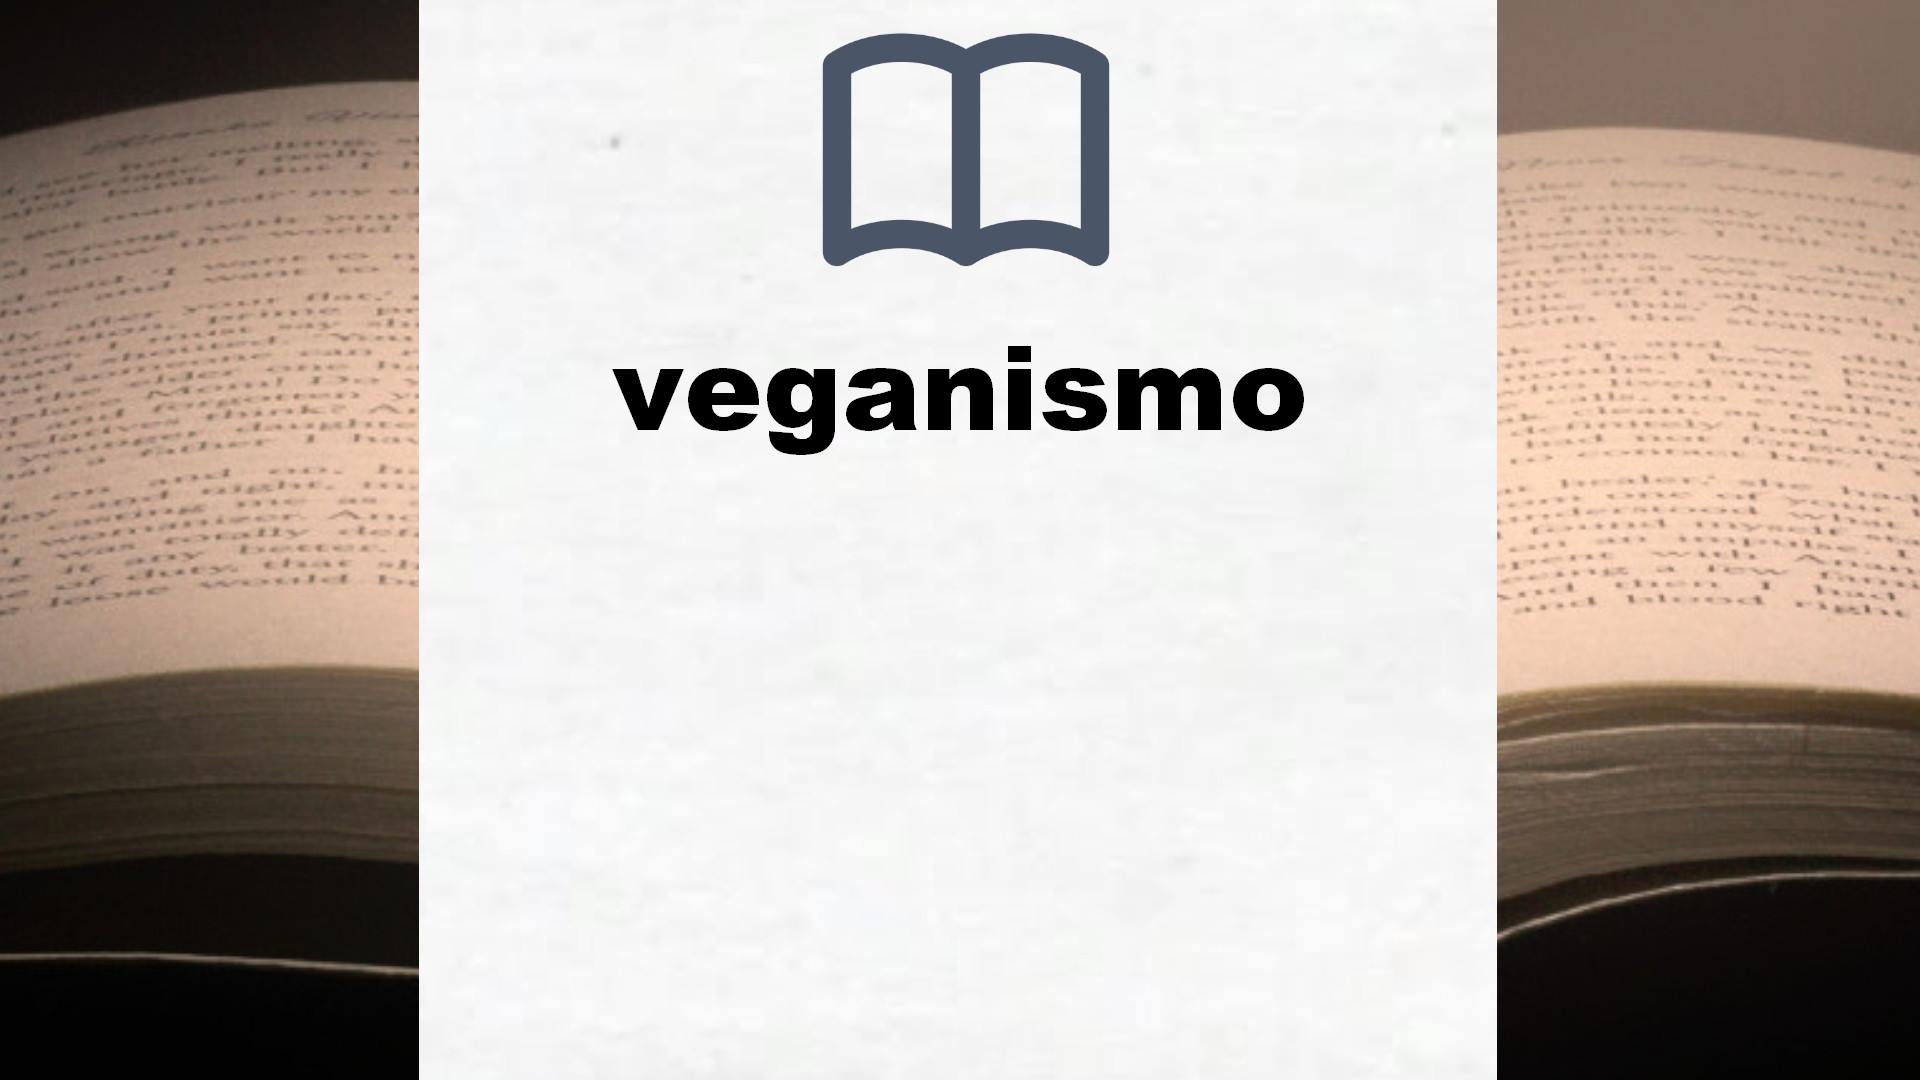 Libros sobre veganismo